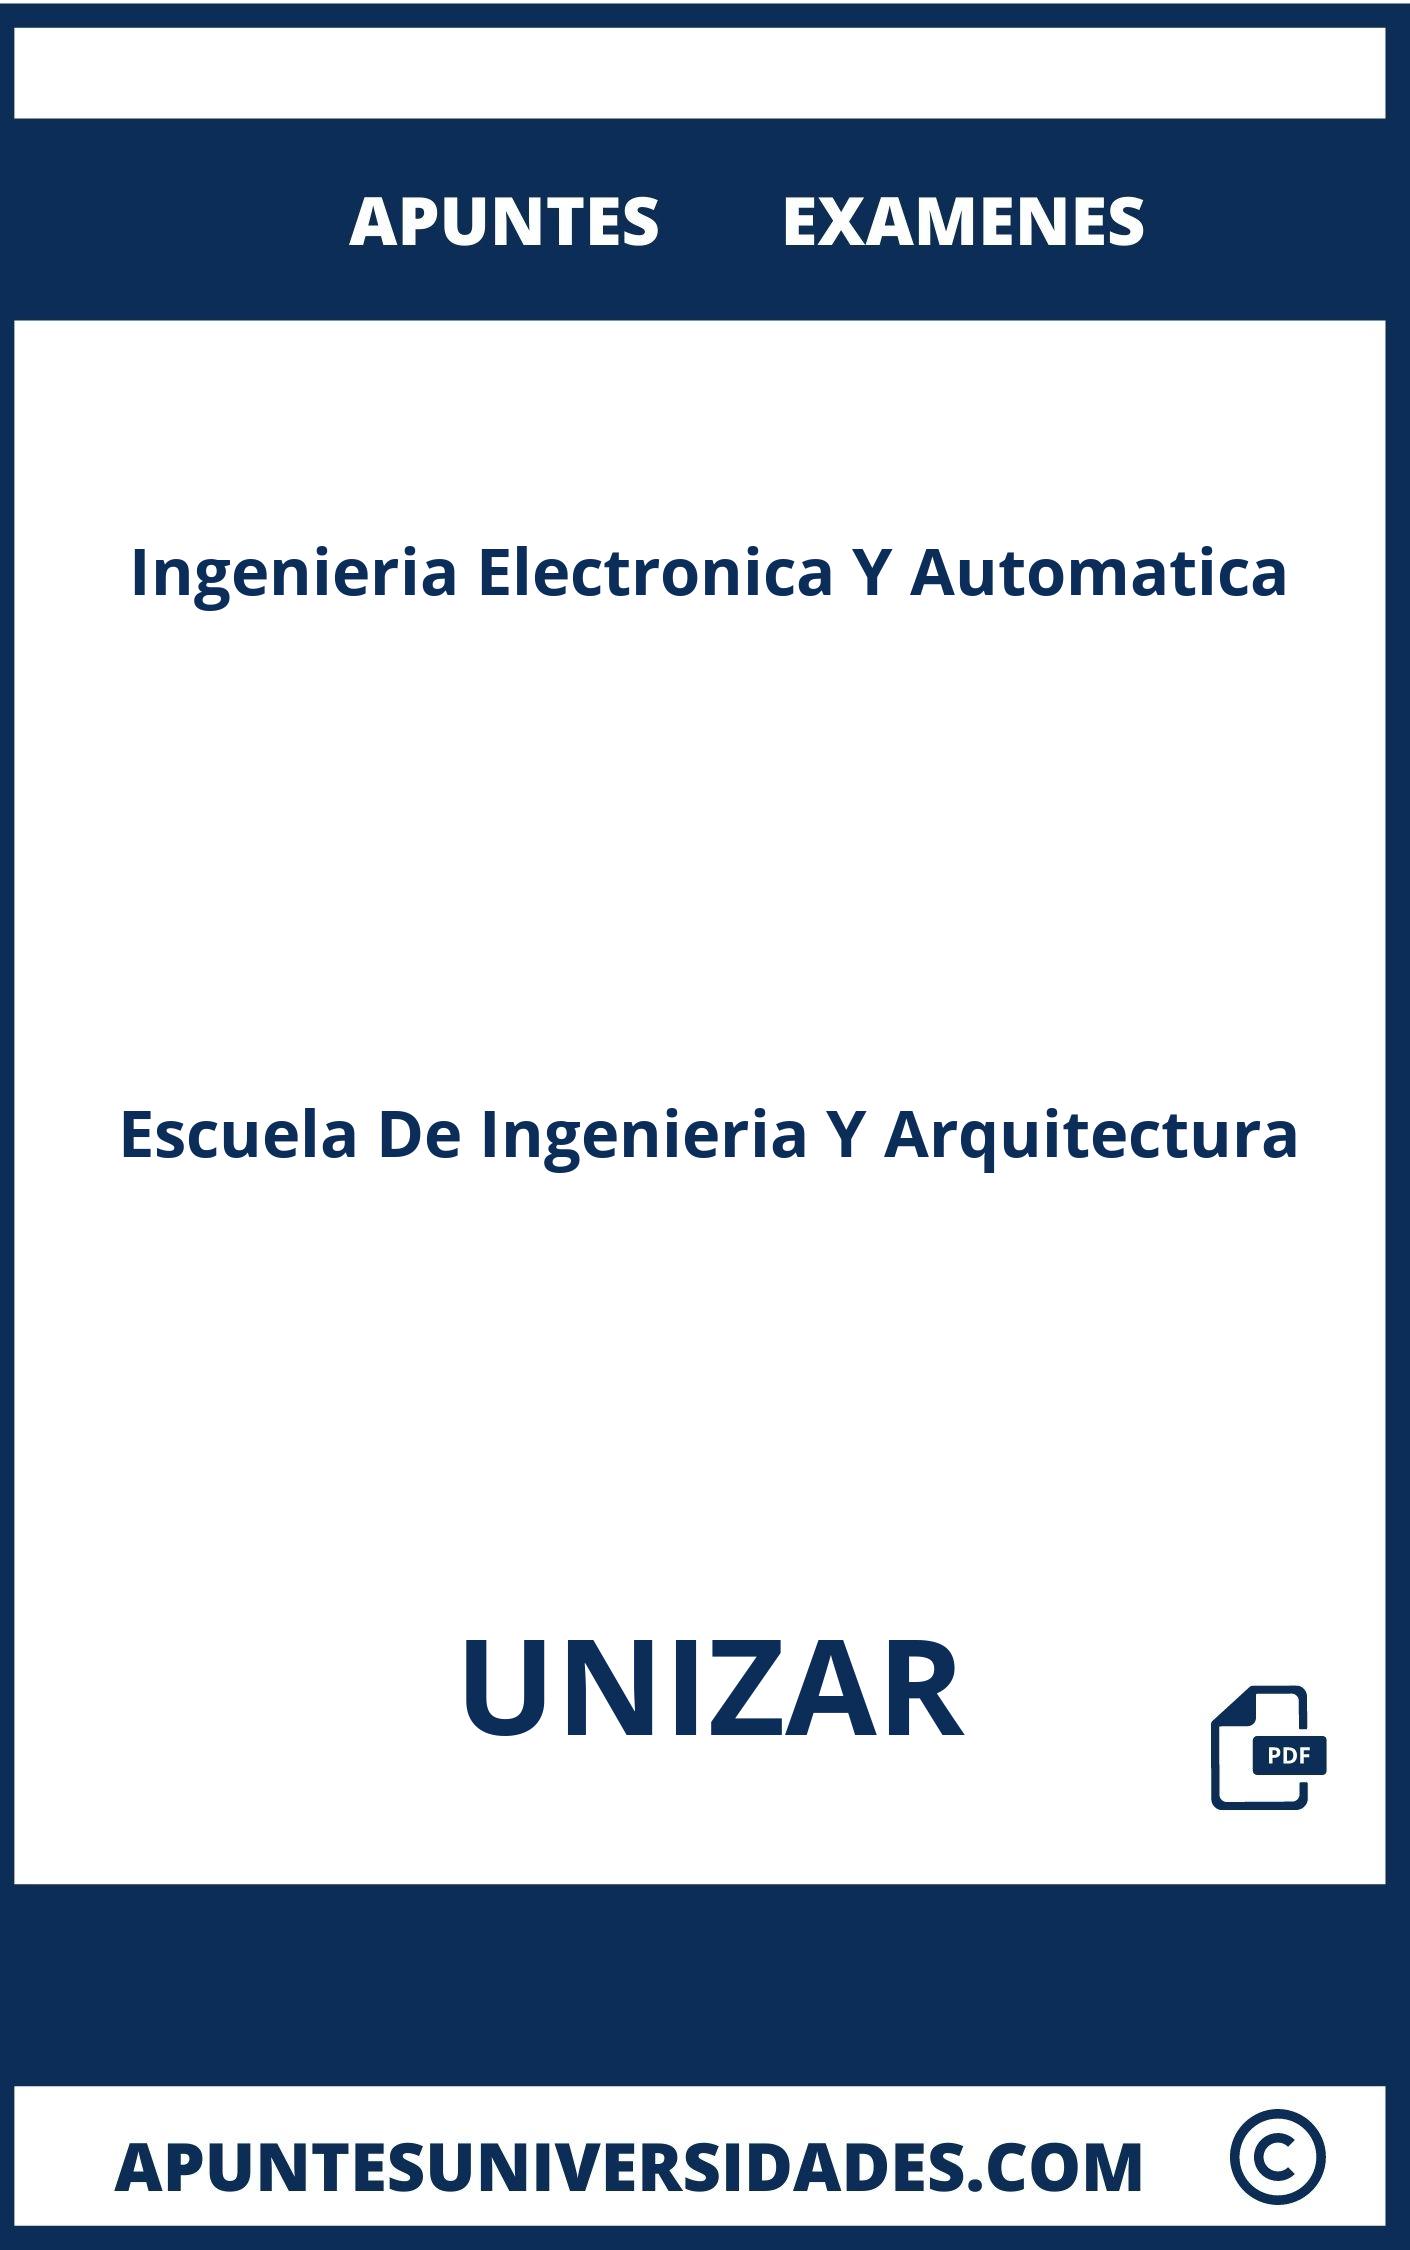 Examenes Apuntes Ingenieria Electronica Y Automatica UNIZAR